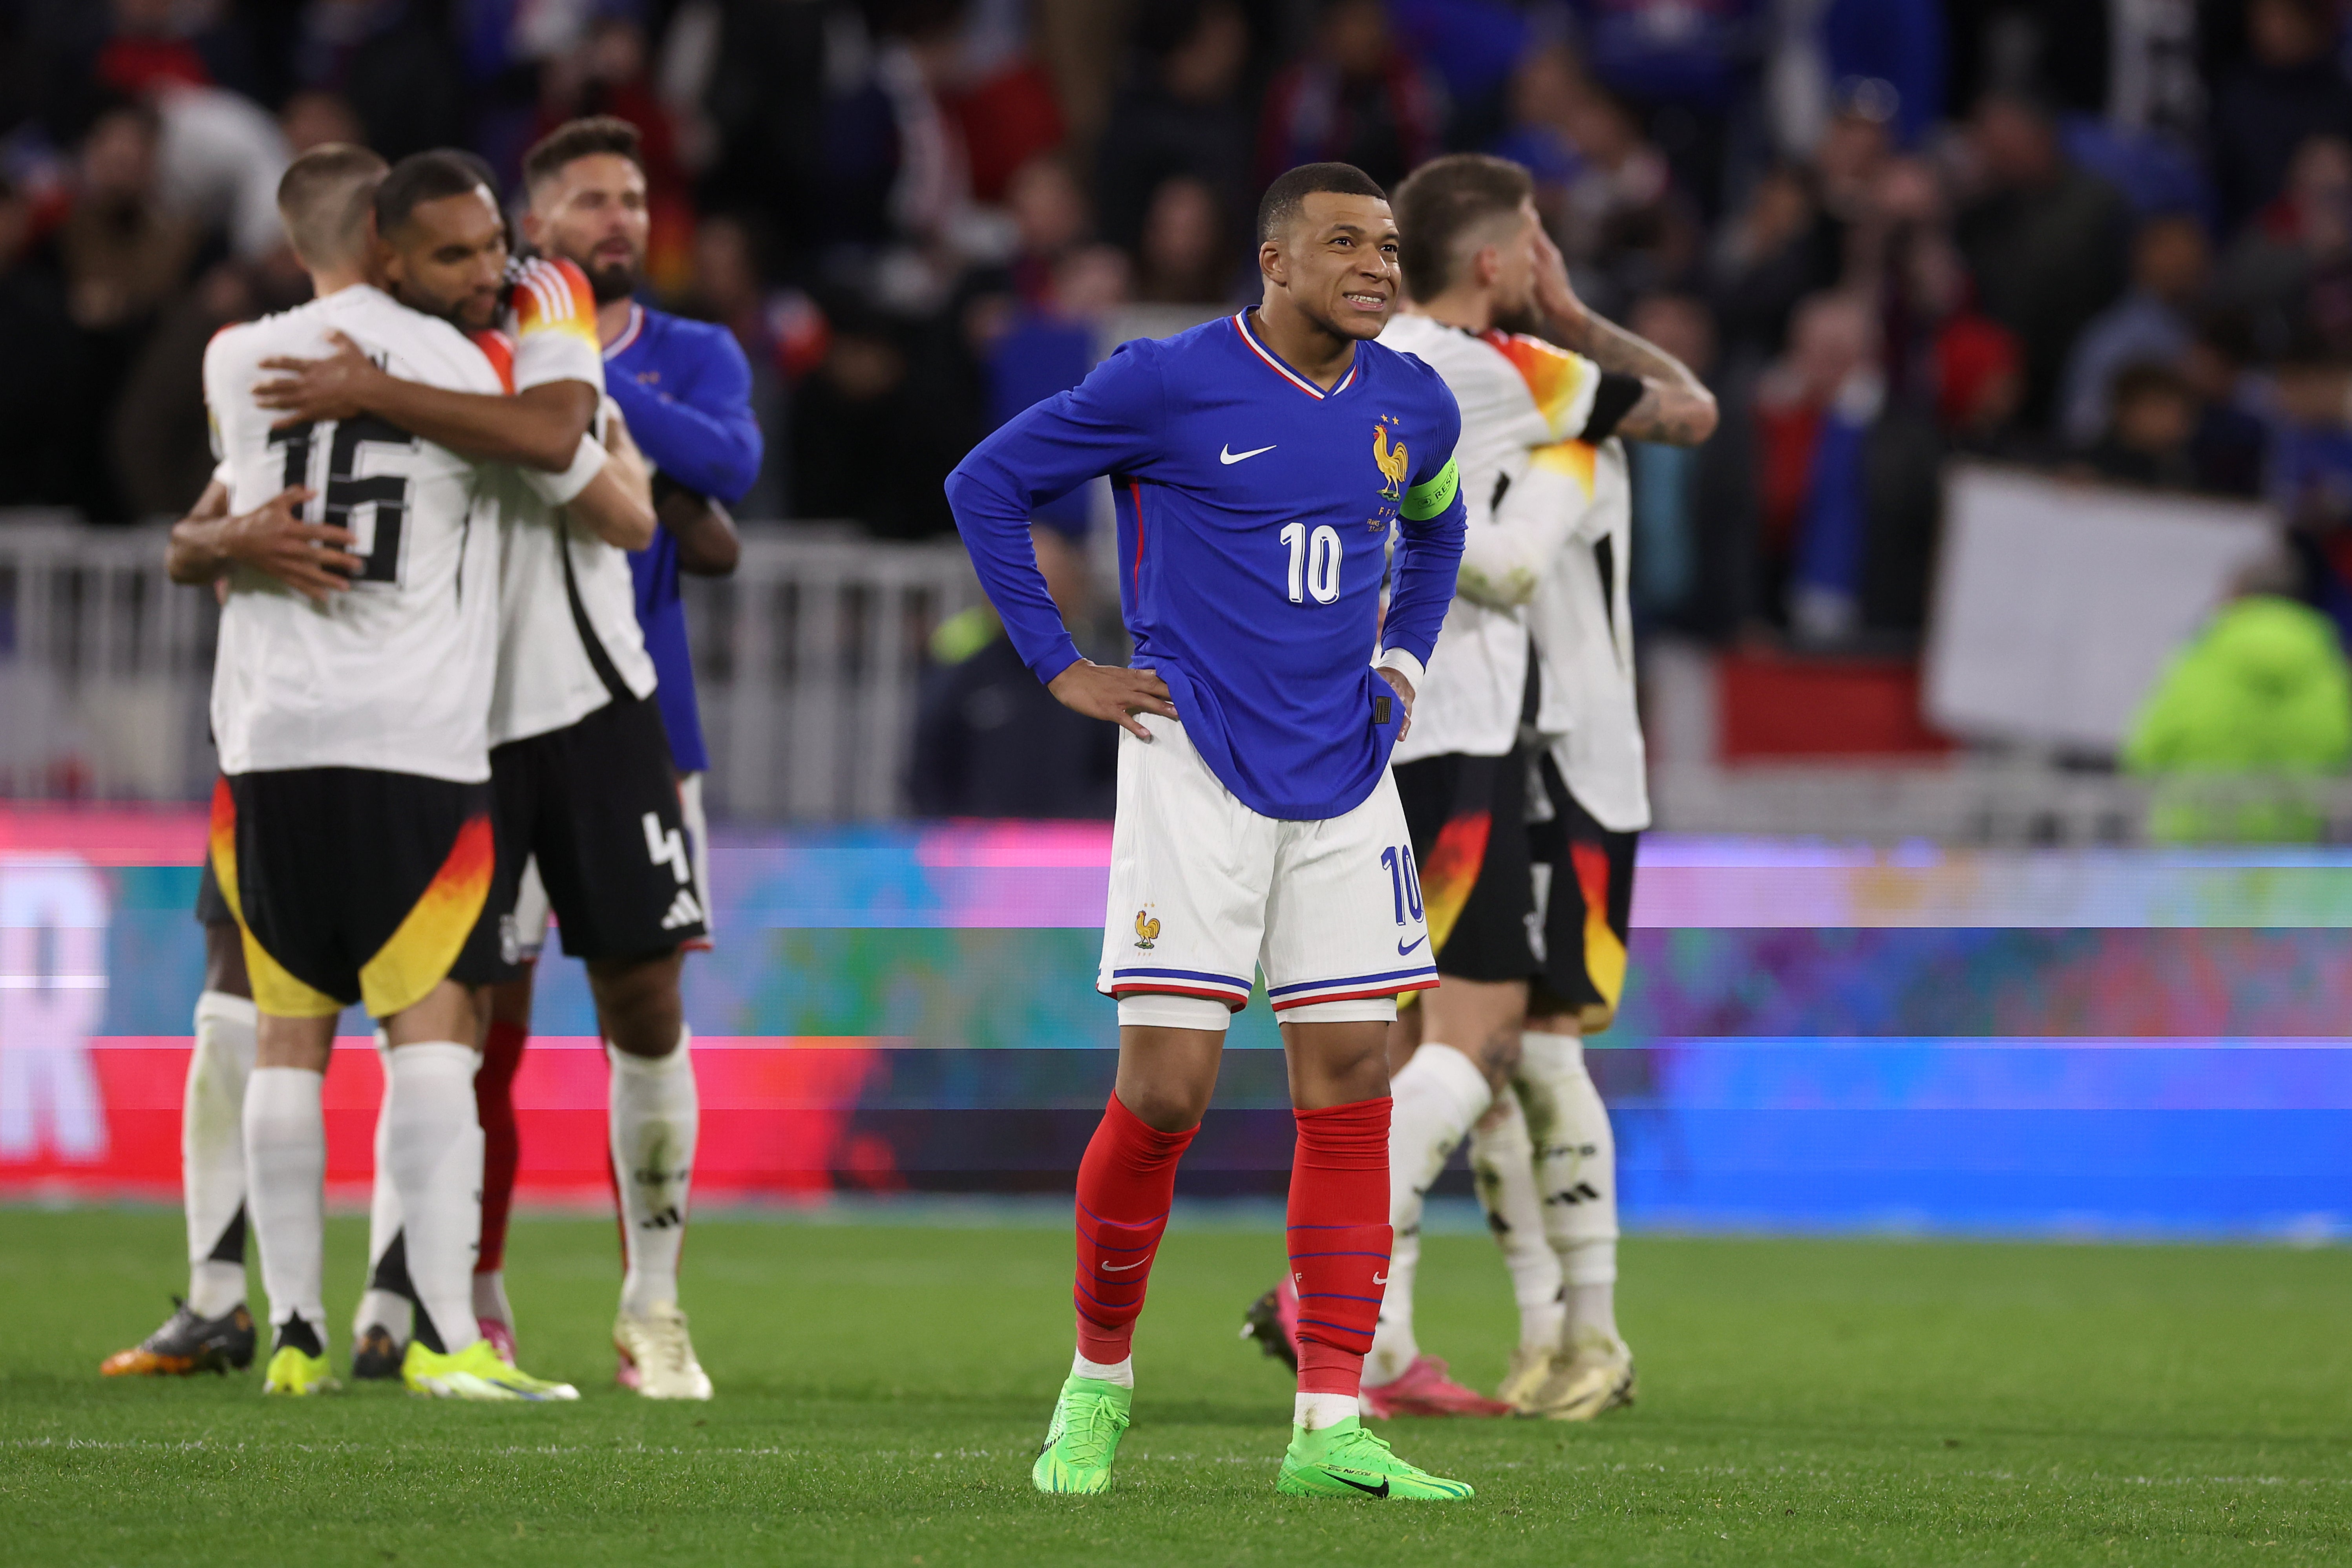 France were beaten by Germany in Lyon